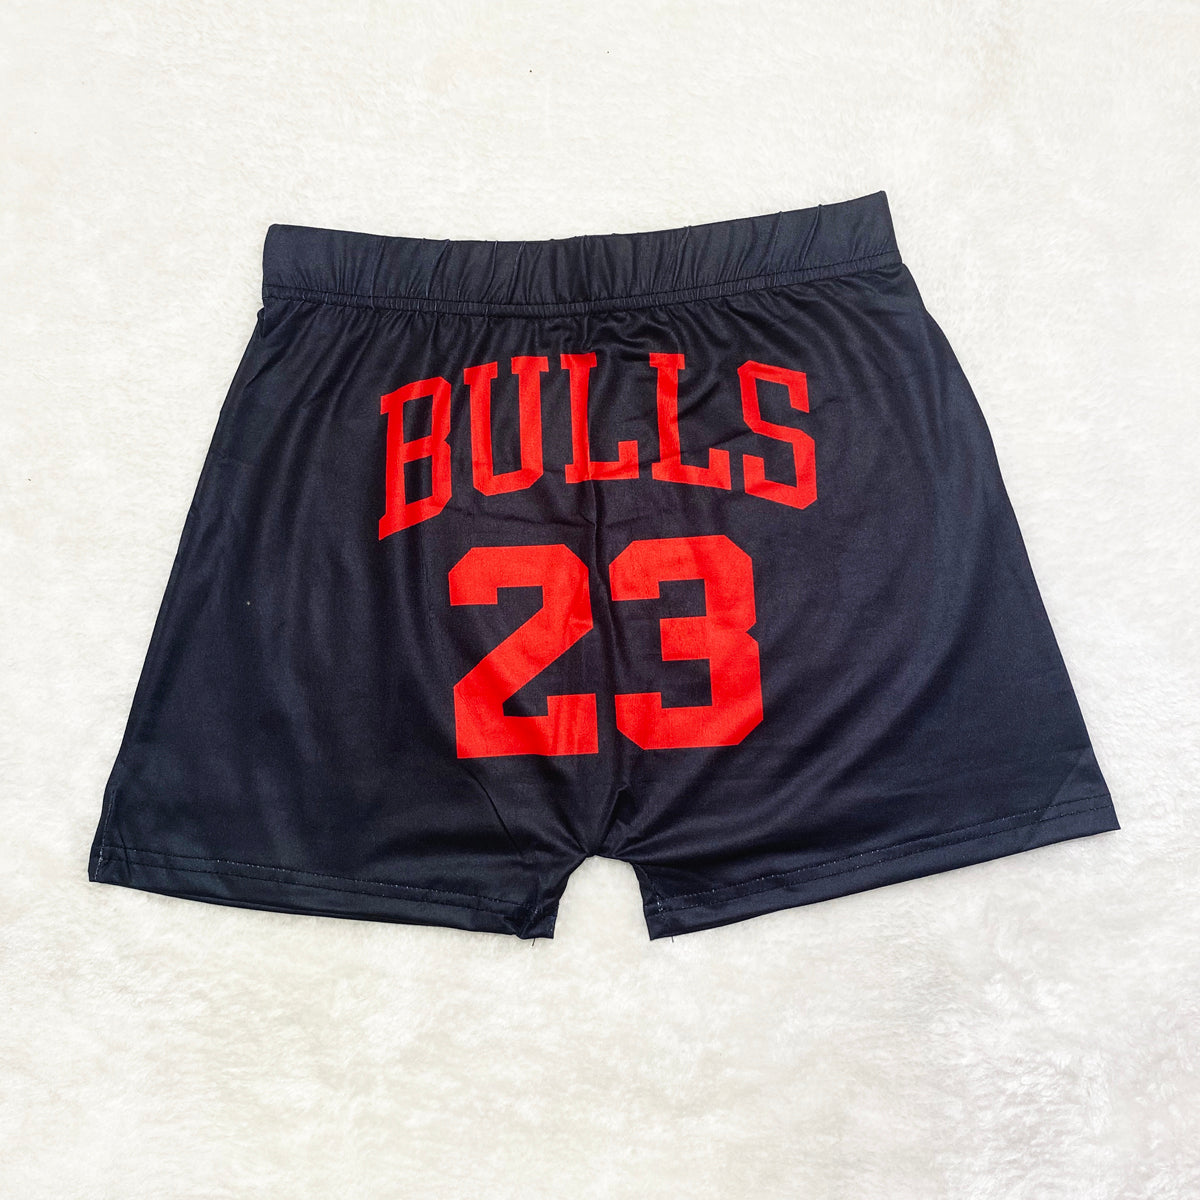 “Bulls“ Shorts (Black )